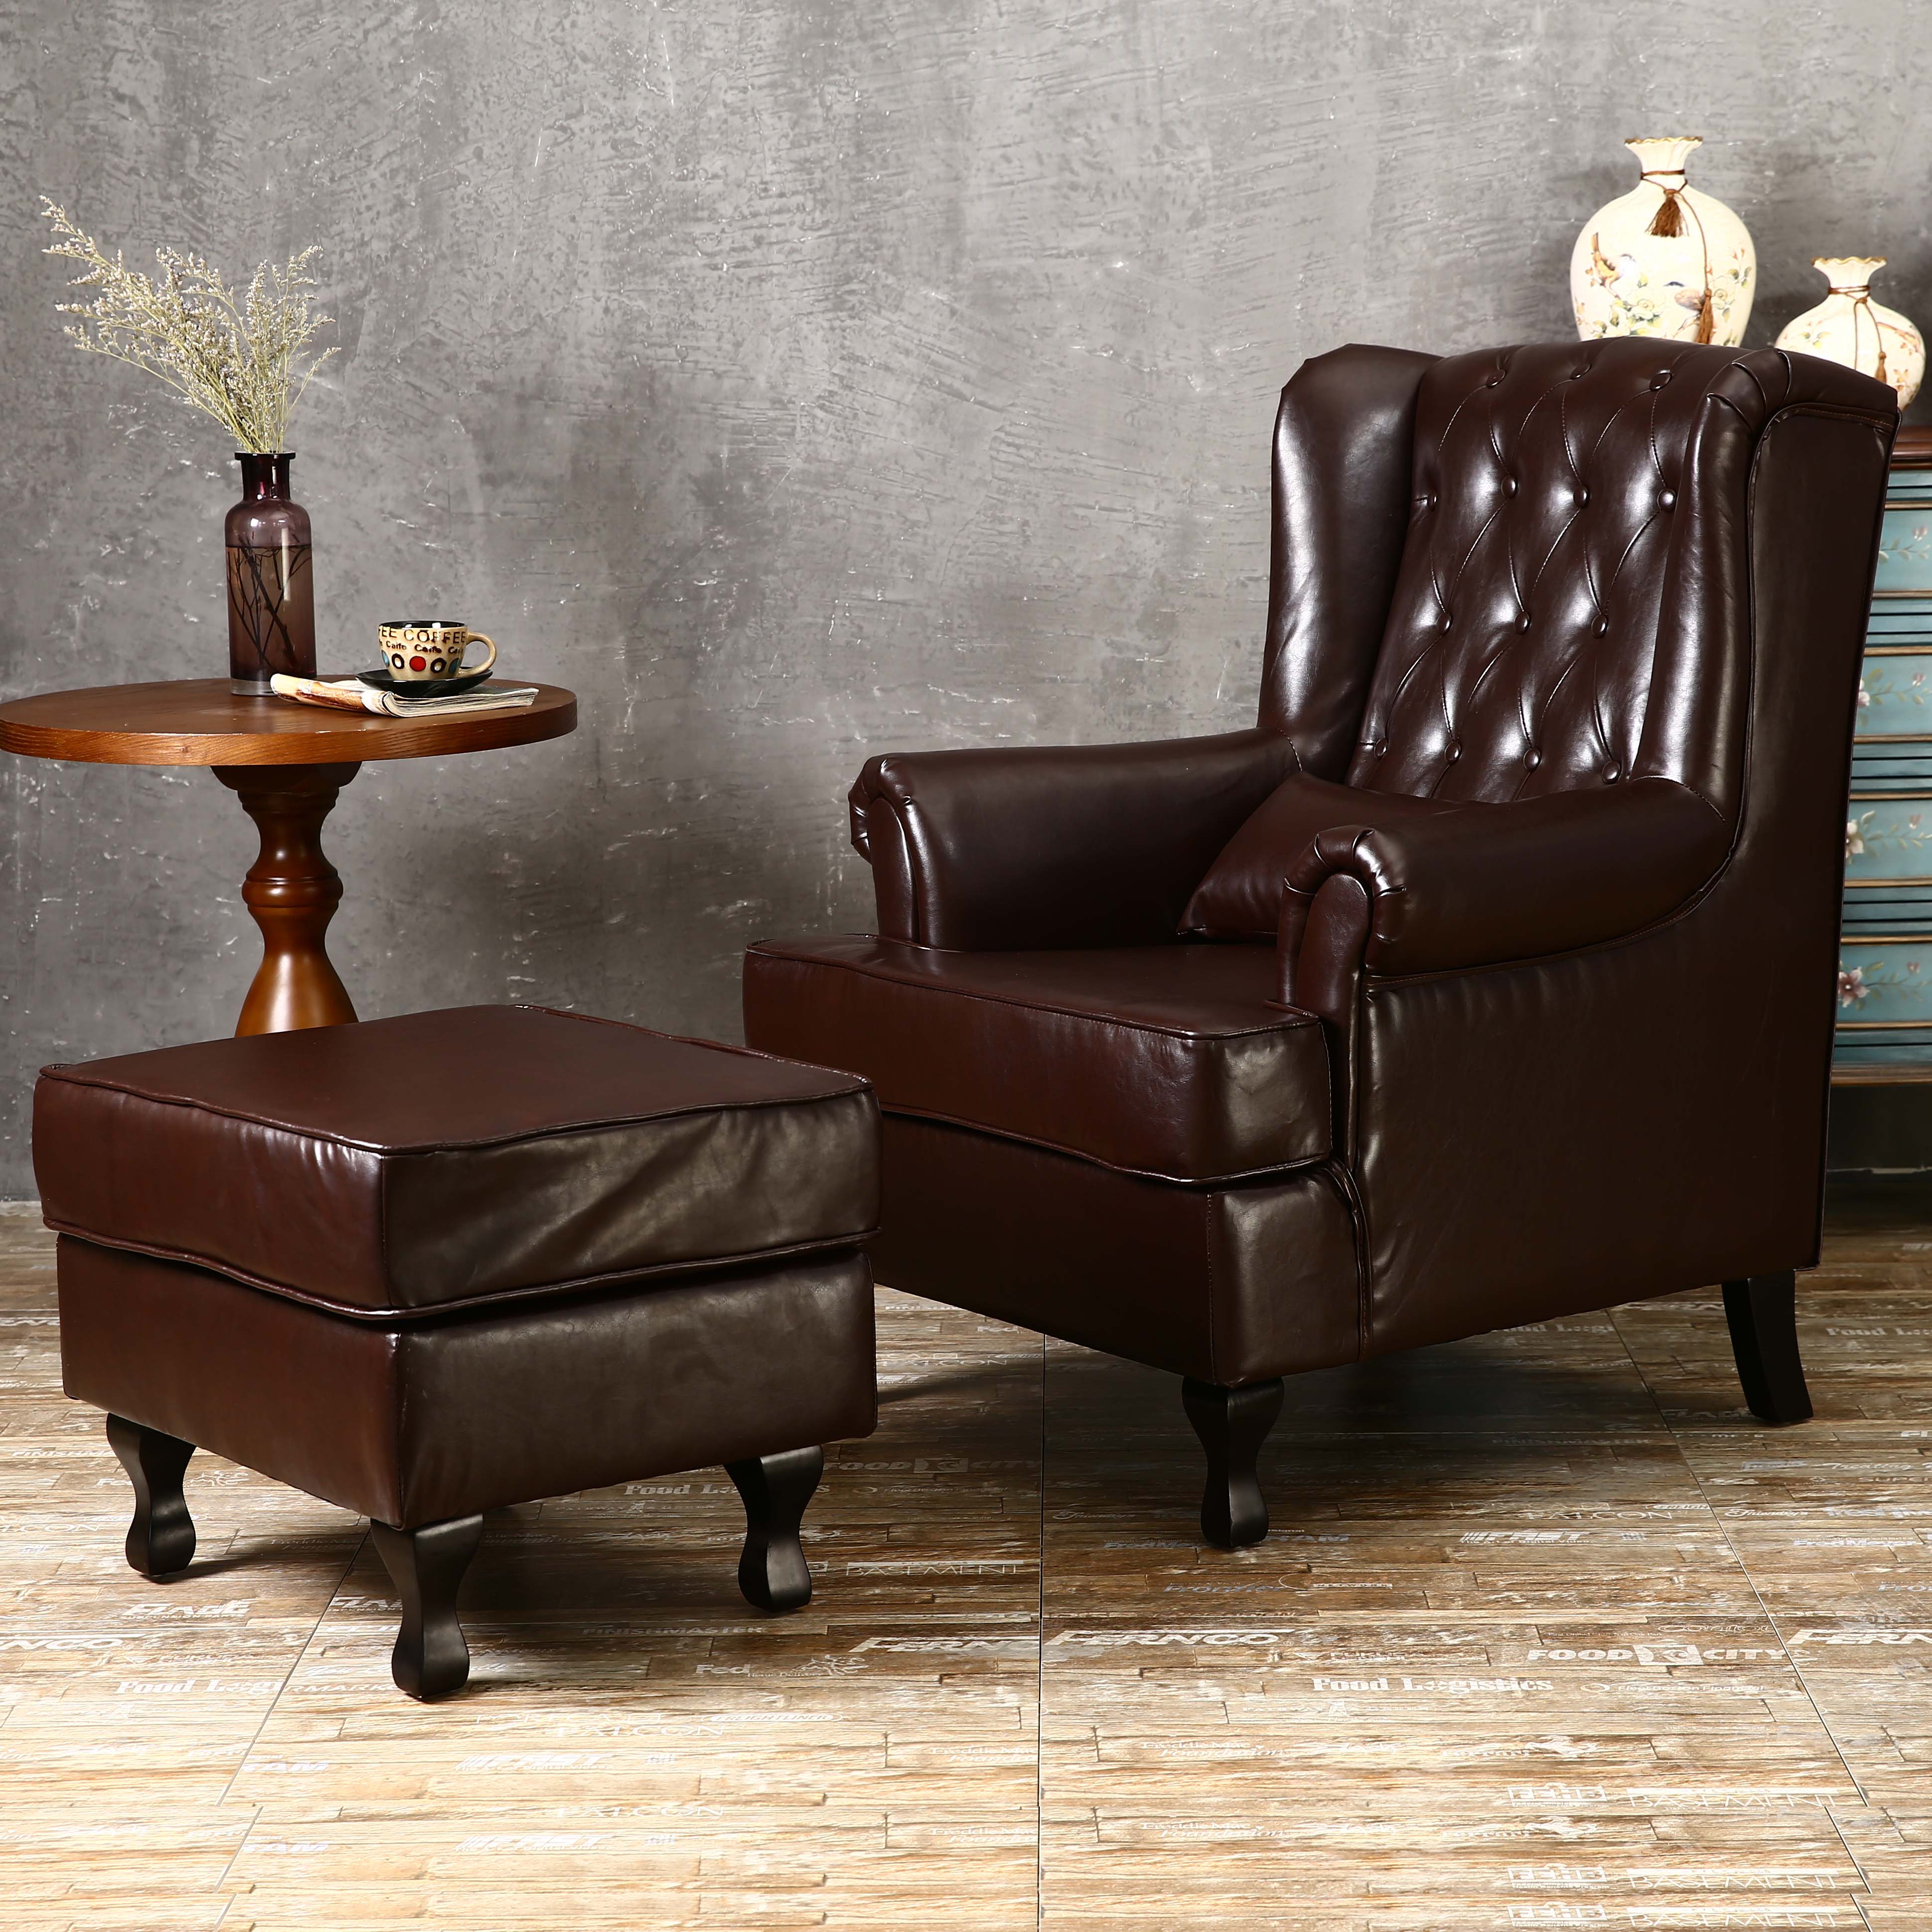 美式欧式老虎椅单人沙发客厅整装皮沙发现代简约沙发咖啡厅酒吧